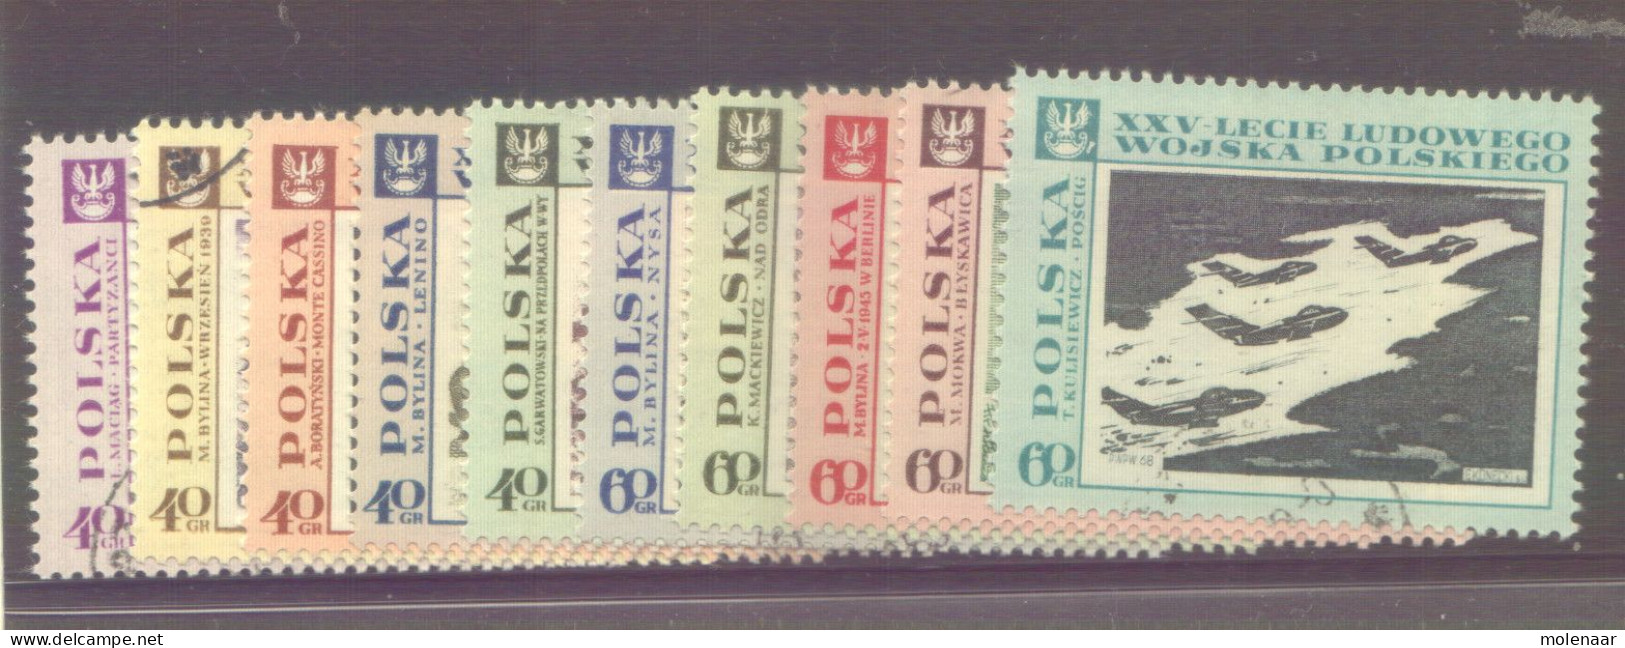 Postzegels > Europa > Polen > 1944-.... Republiek > 1961-70 > Gebruikt No. 1865-1876 (12016) - Oblitérés